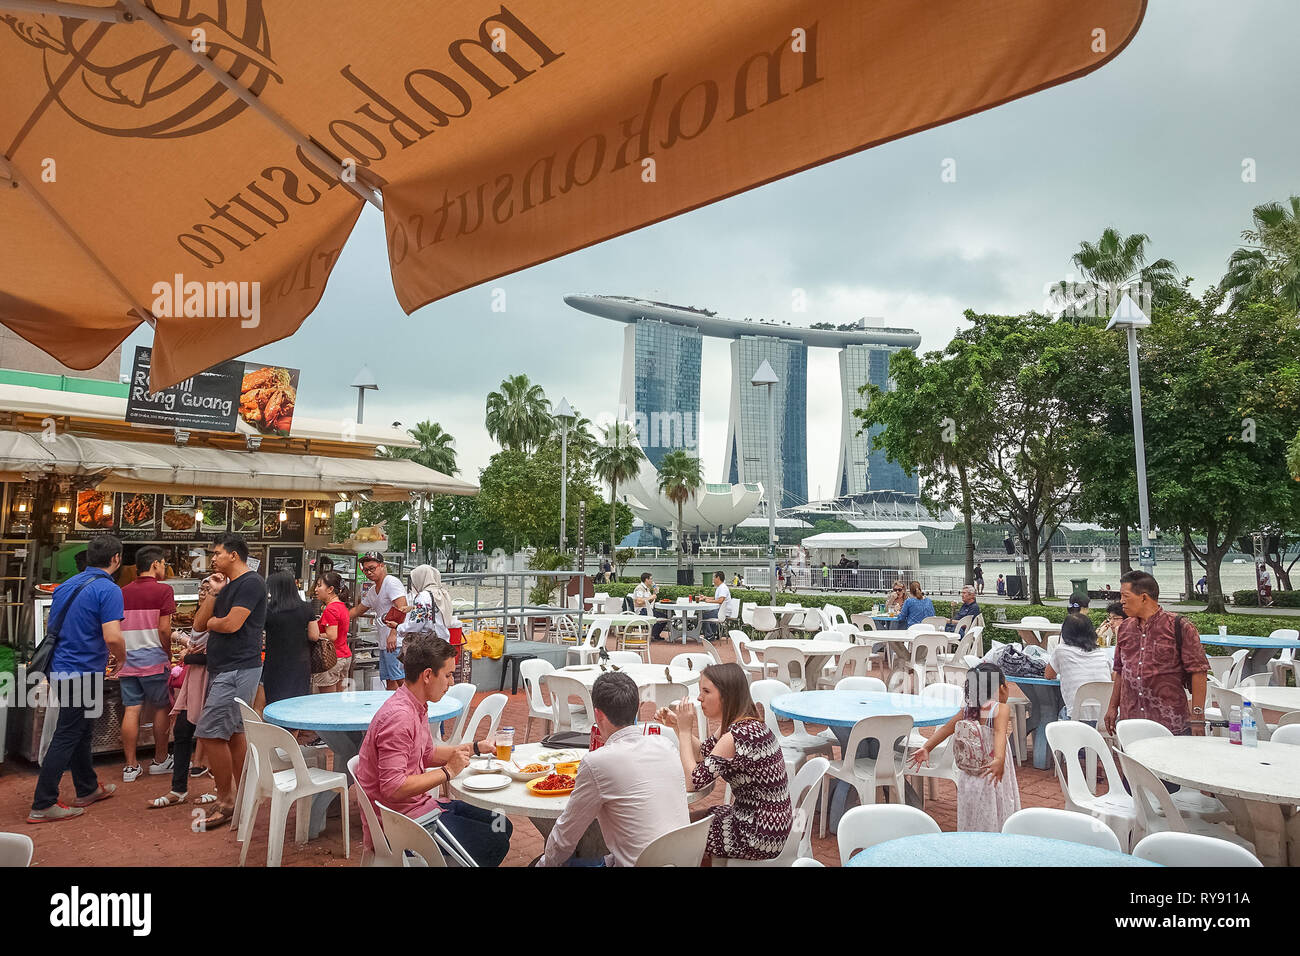 Makansutra Hawker Center y turistas, con Vista Marina Bay Sands - Singapur Foto de stock